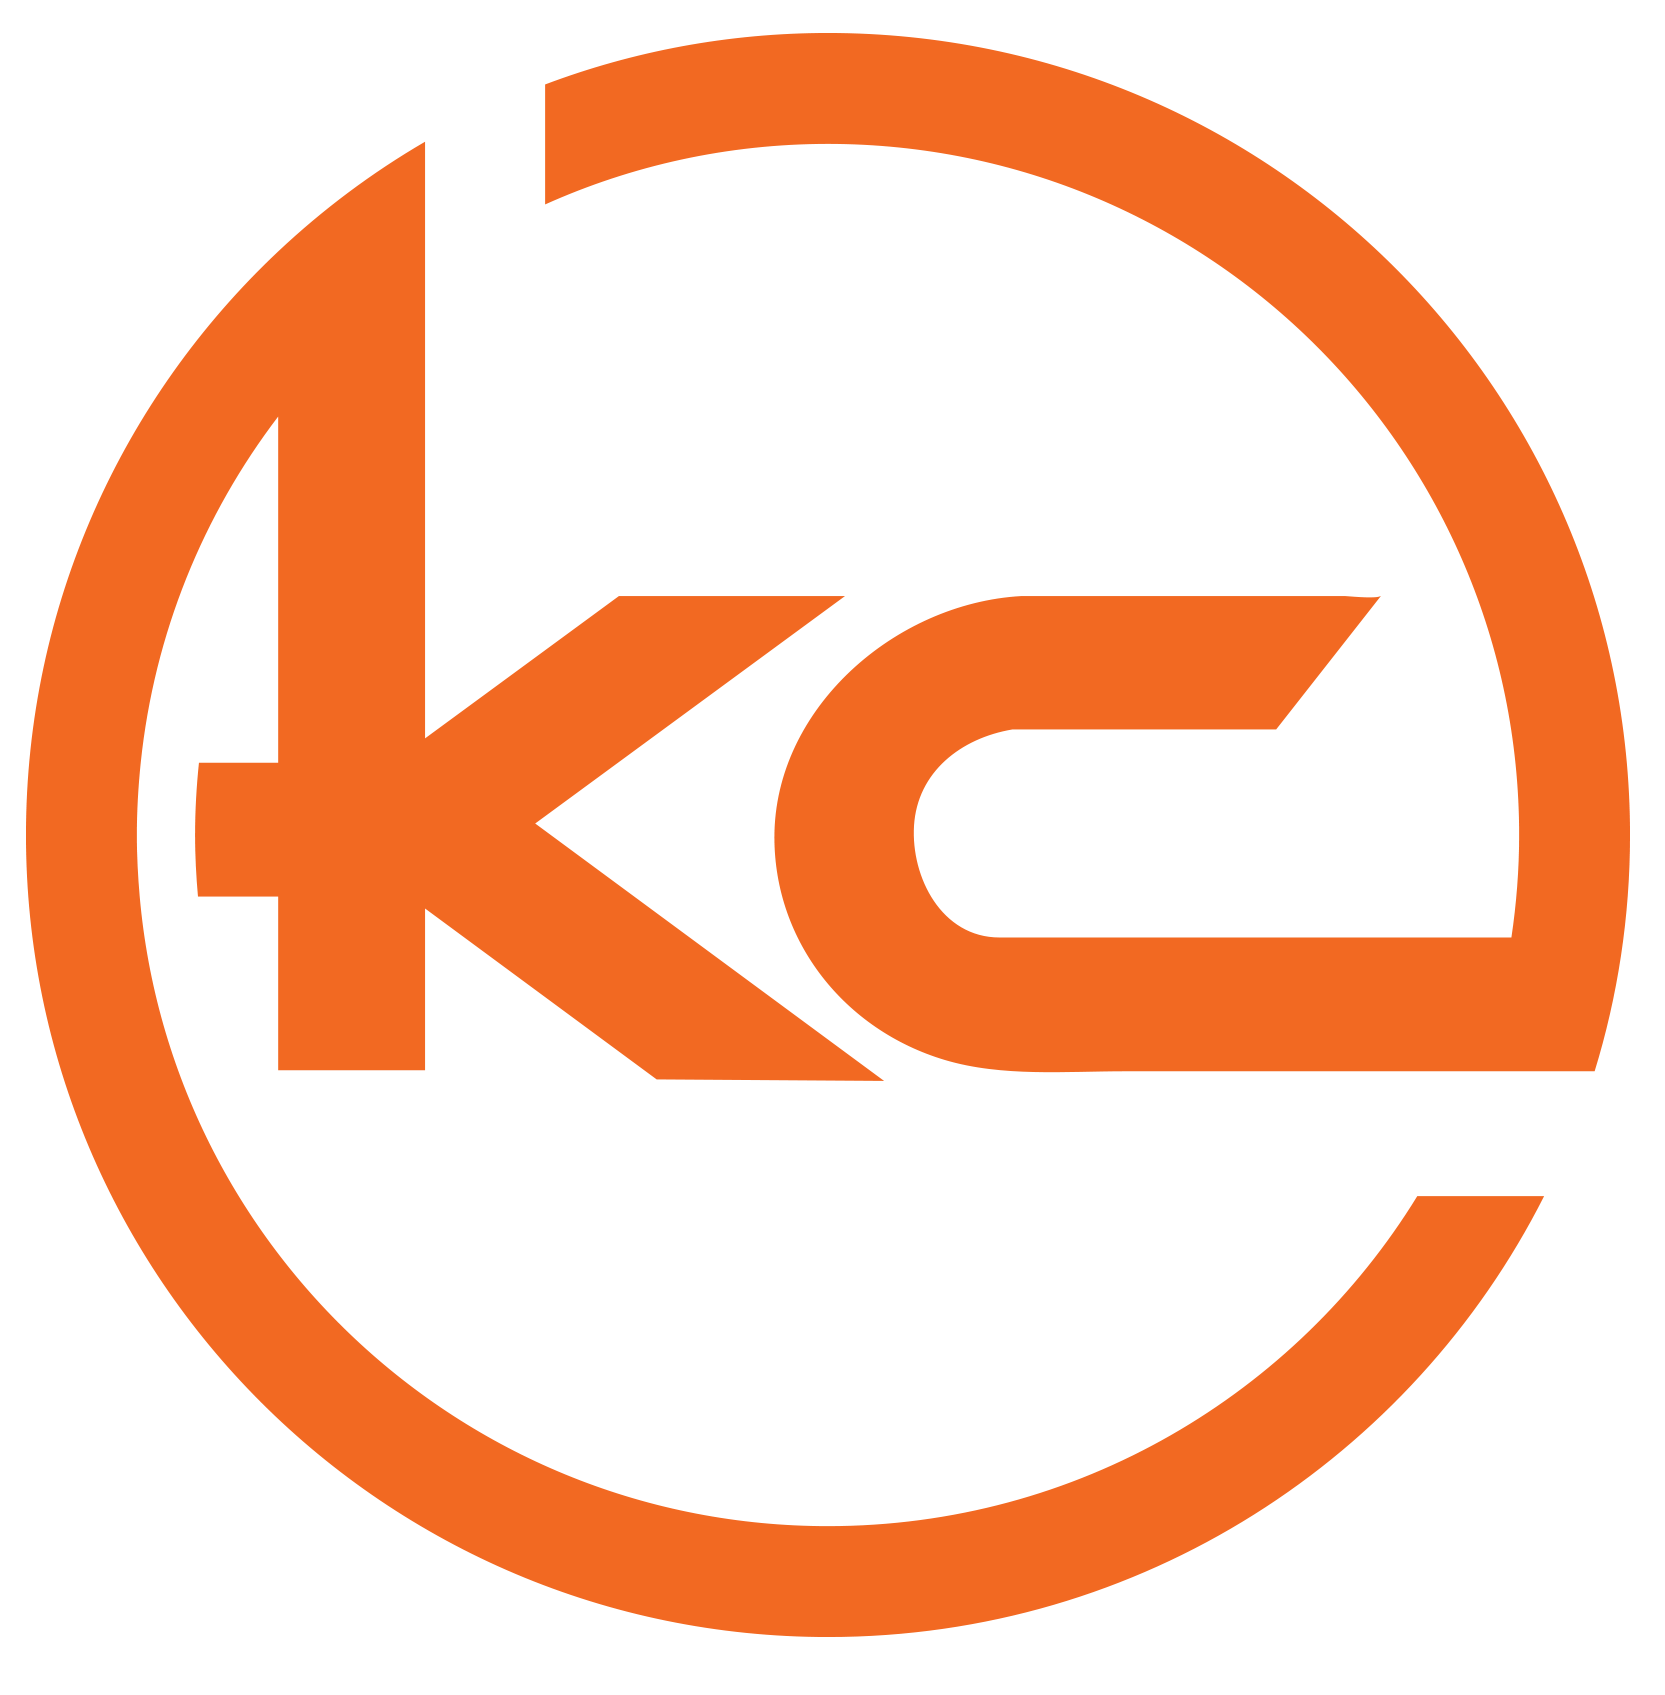 AKC PROS logo